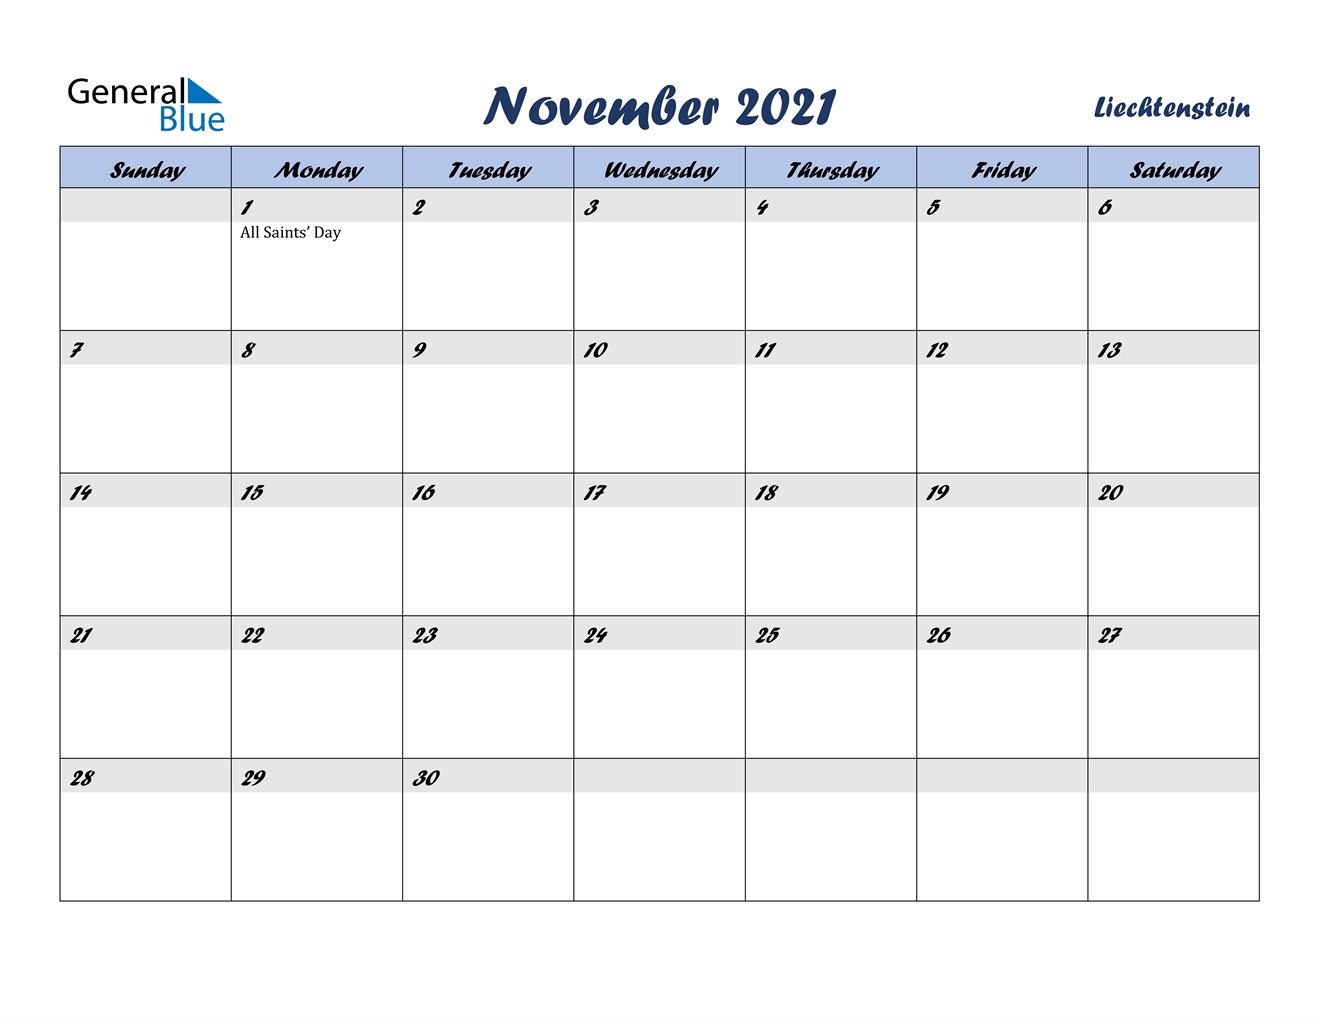 November 2021 Calendar - Liechtenstein 2021 November December Calendar